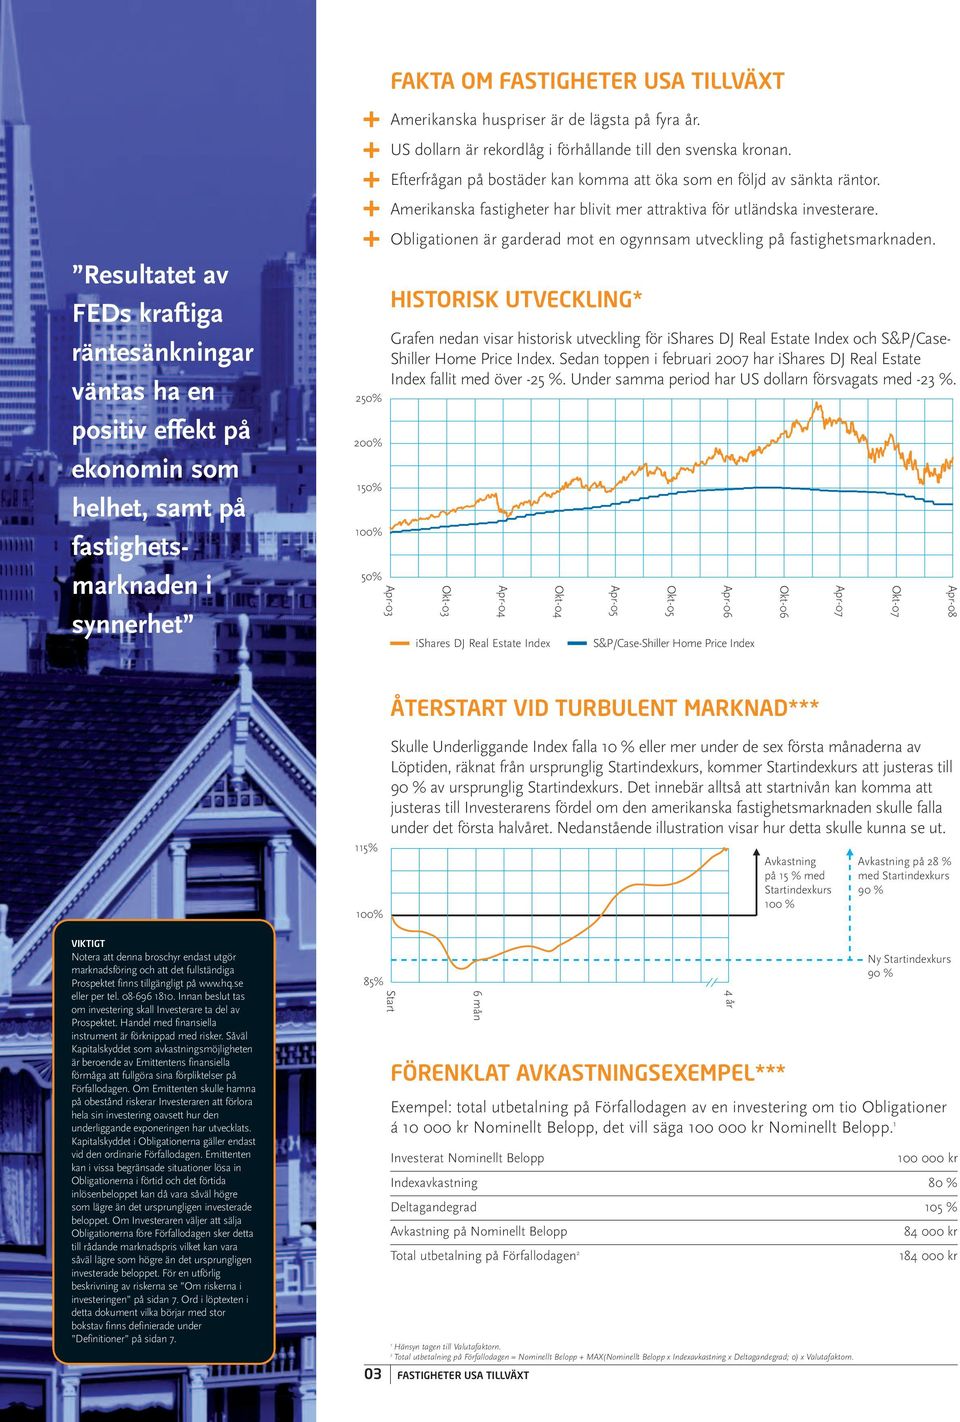 Amerikanska fastigheter har blivit mer attraktiva för utländska investerare. Obligationen är garderad mot en ogynnsam utveckling på fastighetsmarknaden.